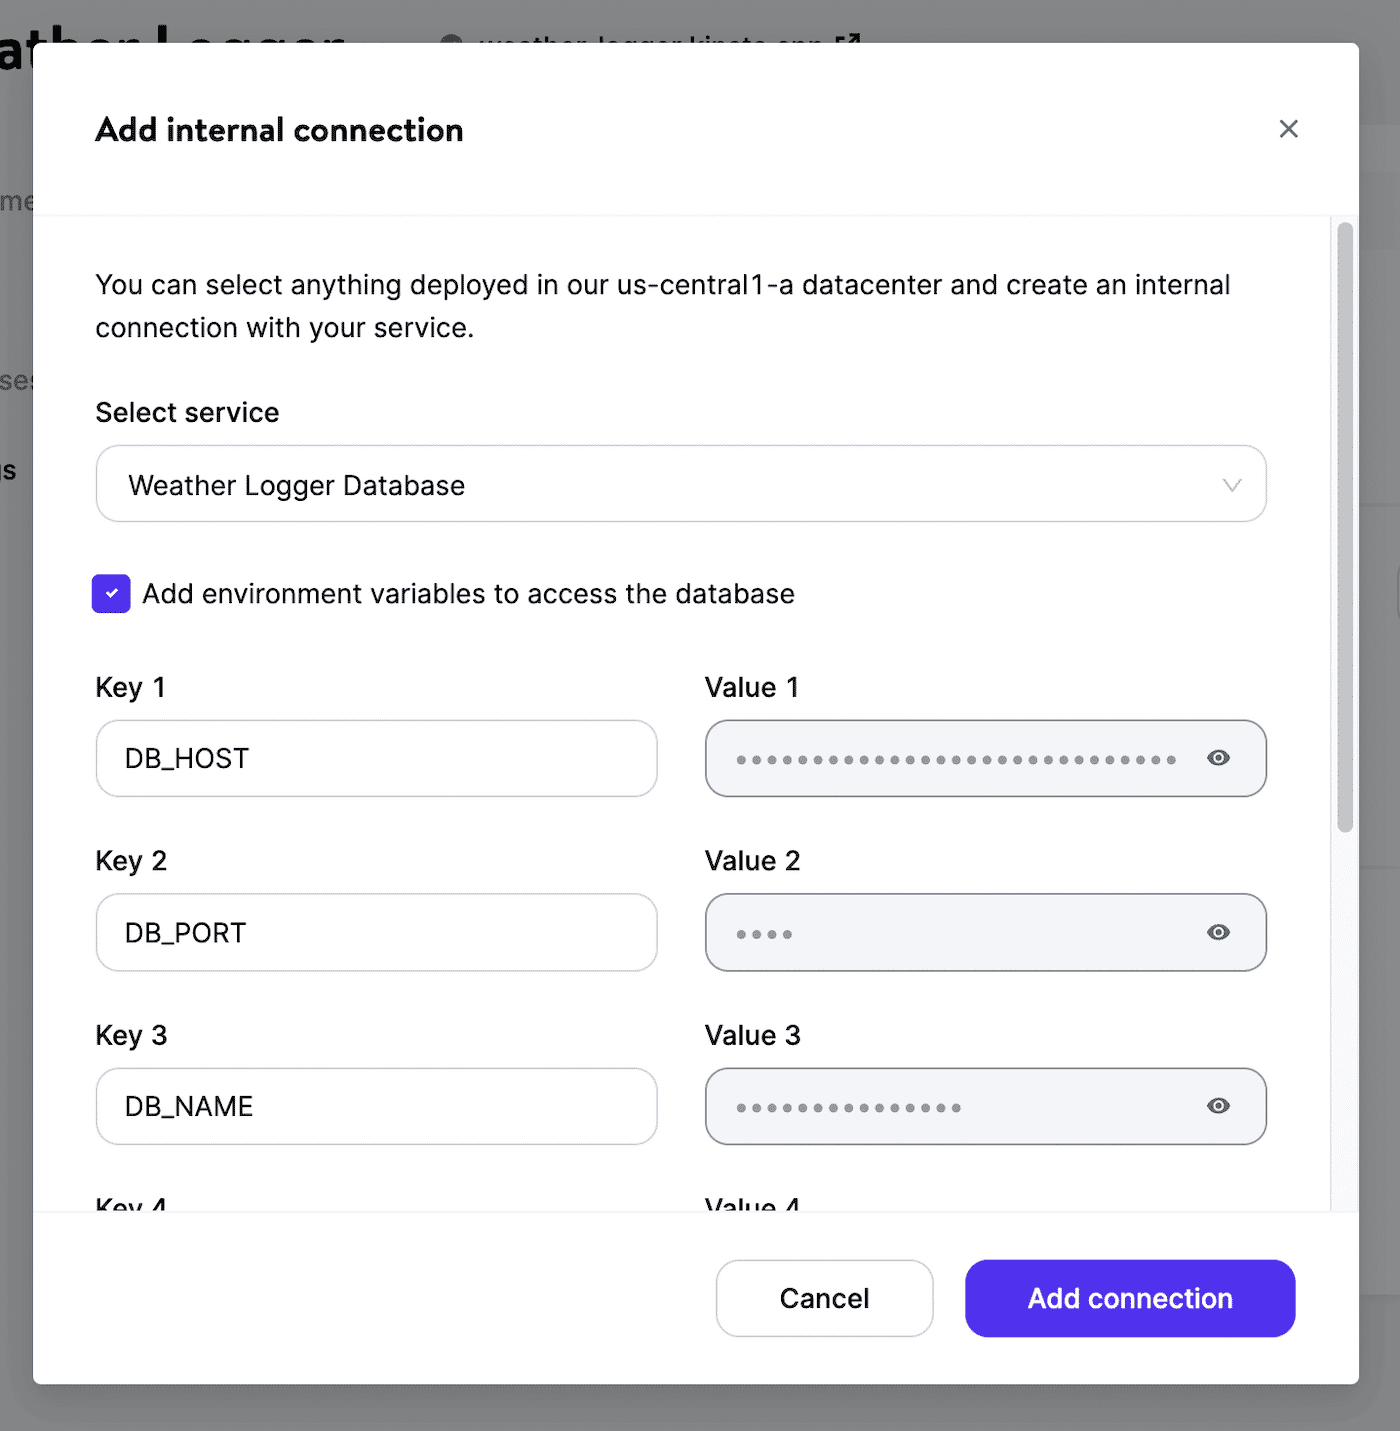 Añade una conexión interna para nuestra aplicación de ejemplo.